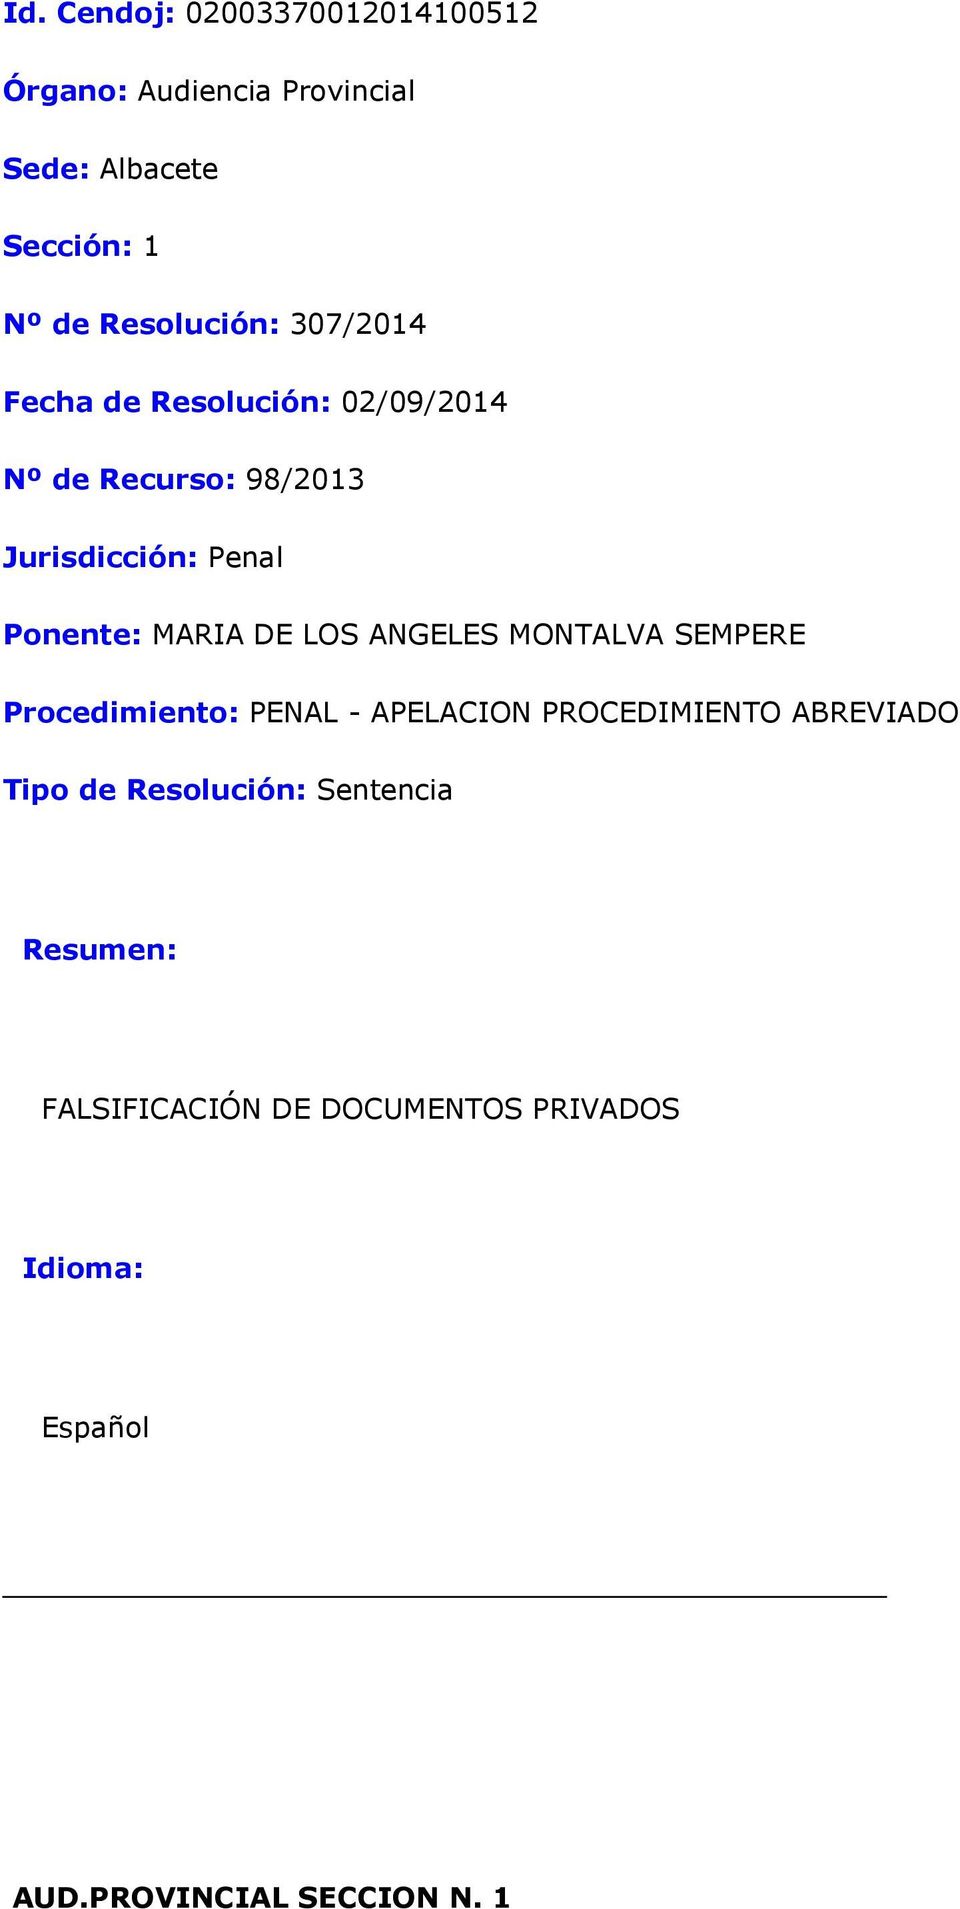 Ponente: MARIA DE LOS ANGELES MONTALVA SEMPERE Procedimiento: PENAL - APELACION PROCEDIMIENTO ABREVIADO